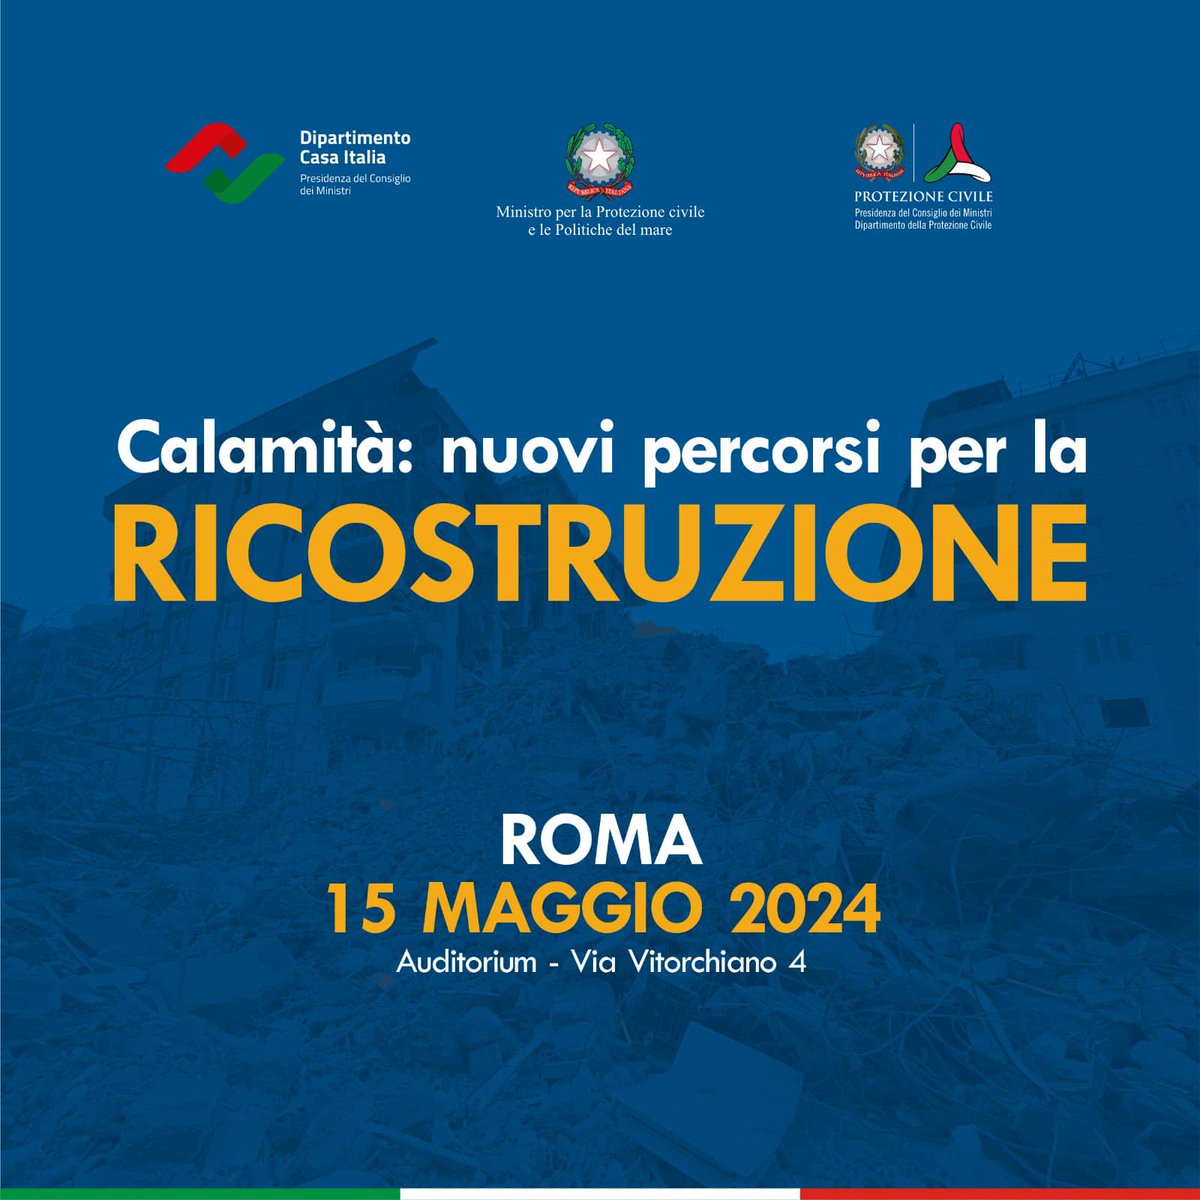 Oggi a Roma, con il ministro @Nello_Musumeci, per approfondire il percorso normativo e tecnico in materia di ricostruzione post calamità. Vi aspettiamo a partire dalle 9:30, in Via Vitorchiano 4.
L’evento è organizzato dal @DPCgov e dal Dipartimento Casa Italia.